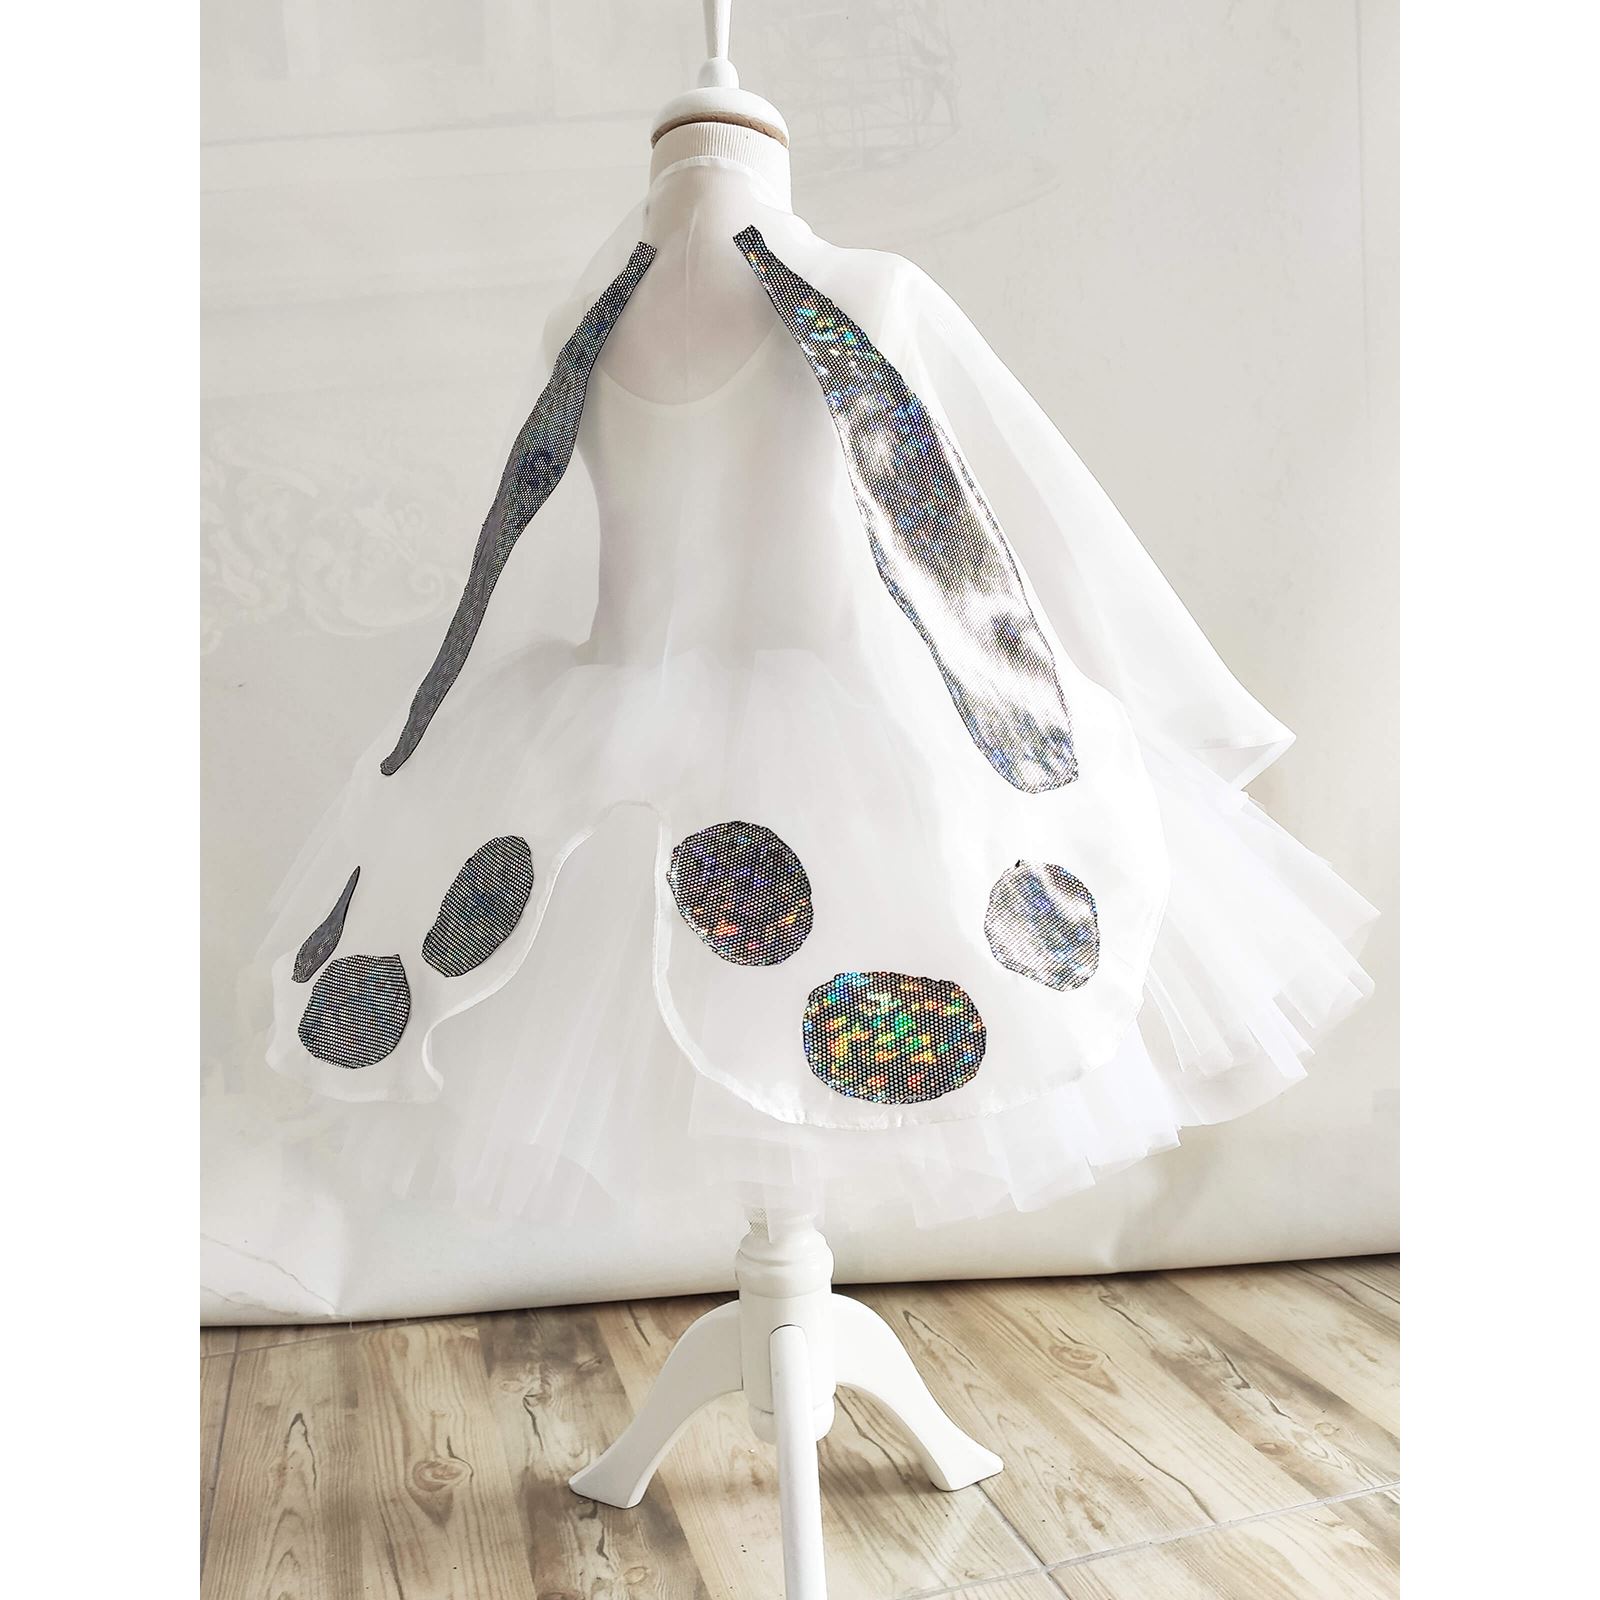 Shecco Babba Balerin Model Kız Çocuk Tütü Elbise, Kelebek Pelerin ve Bandana Takımı - Çocuk Abiye Elbise 6-10 Yaş Abiye Beyaz